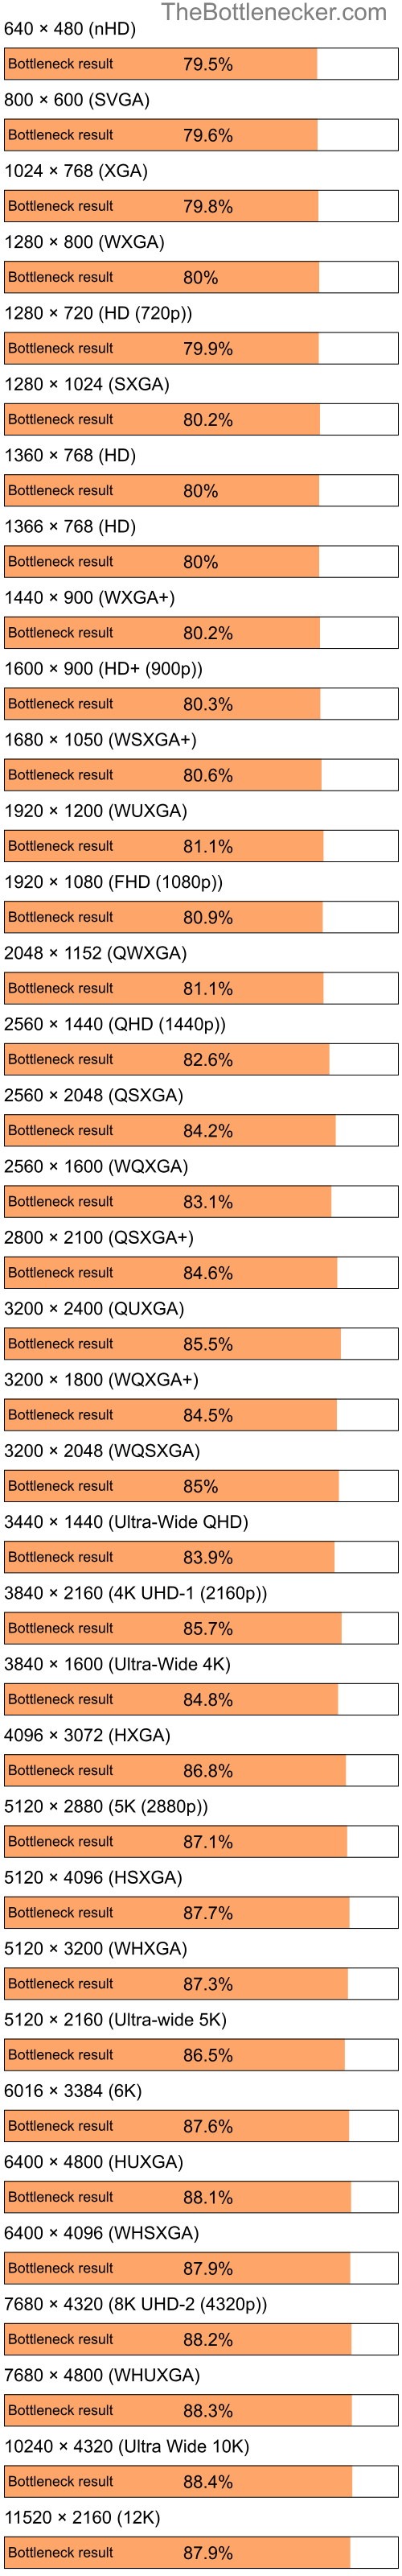 Bottleneck results by resolution for Intel Celeron and NVIDIA GeForce 6150SE in General Tasks